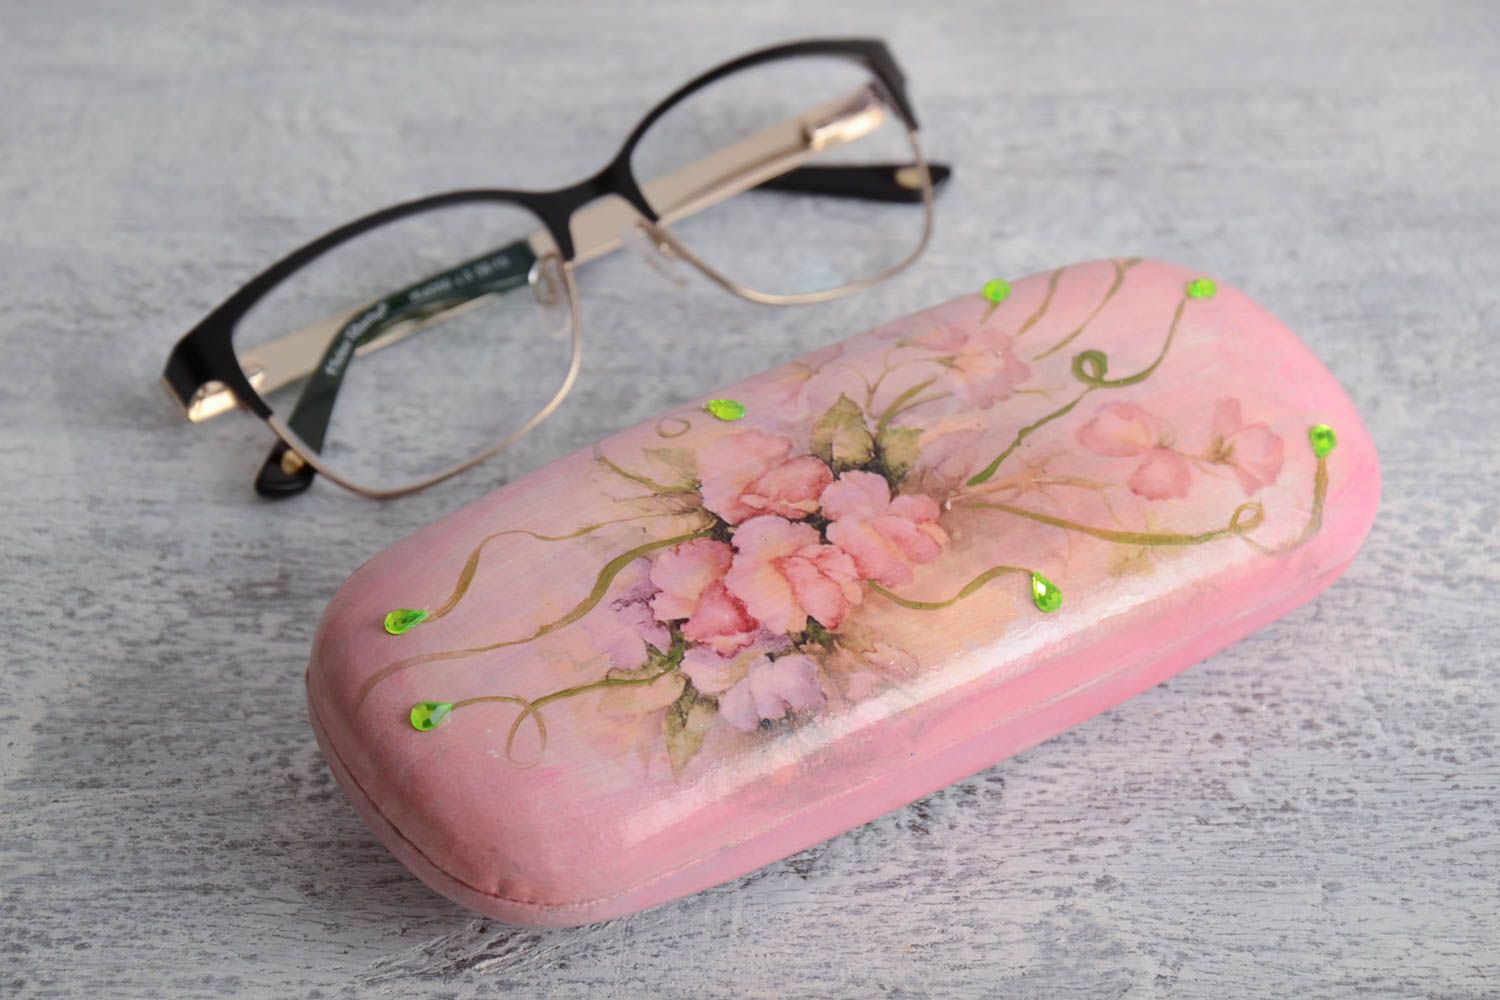 Футляр для очков из пластика расписной ручной работы розовый для девушки фото 1